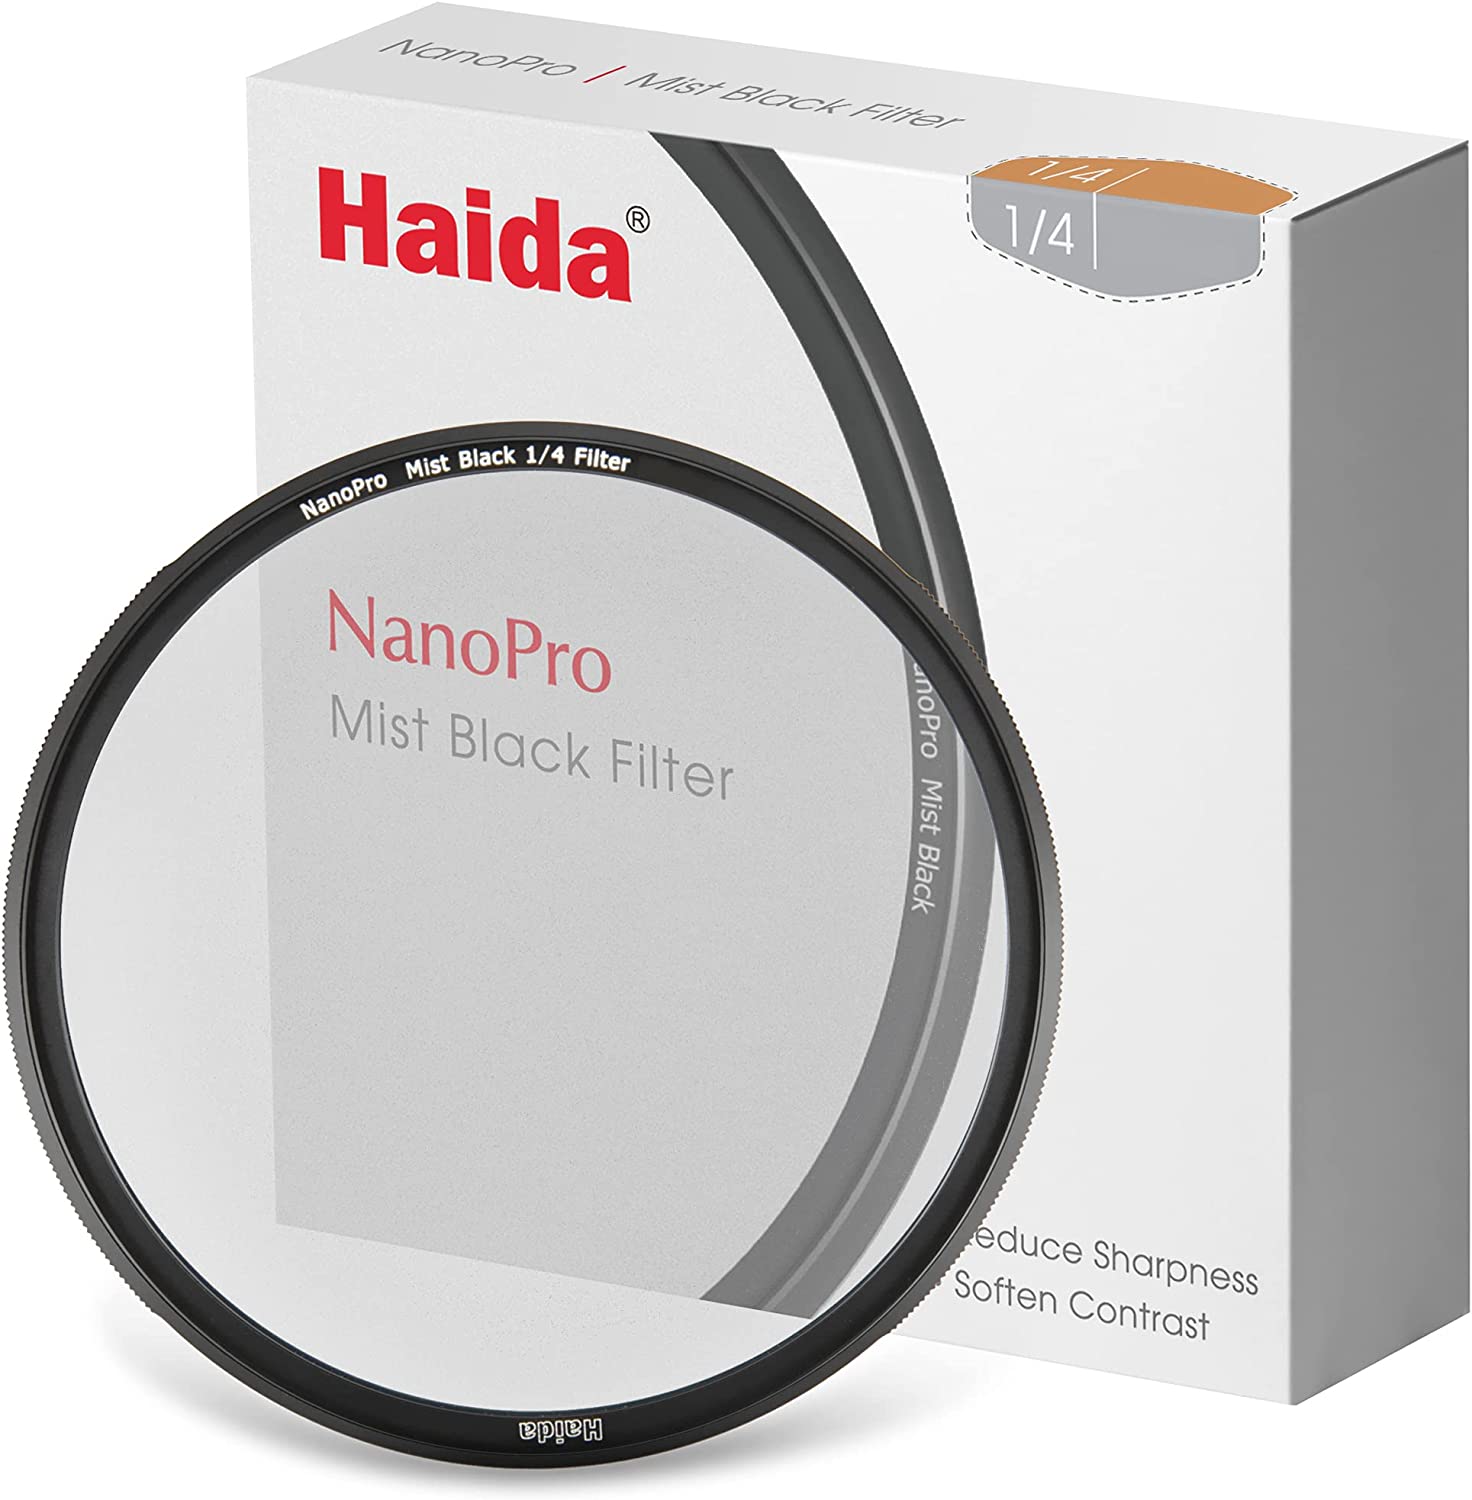 Haida NanoPro Mist Black 1/4 Filtro 43mm